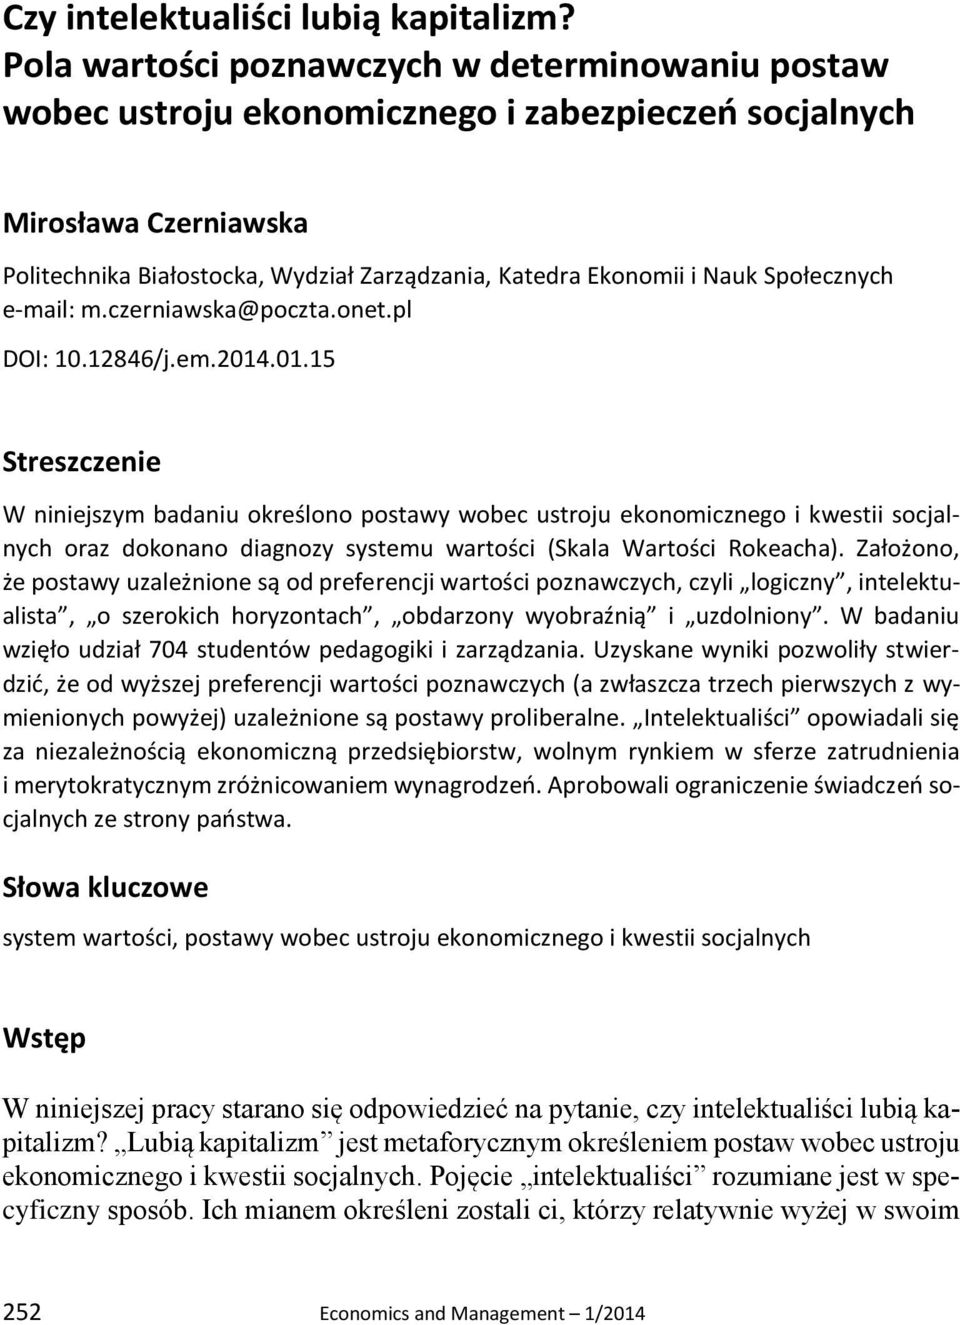 Społecznych e-mail: m.czerniawska@poczta.onet.pl DOI: 10.12846/j.em.2014